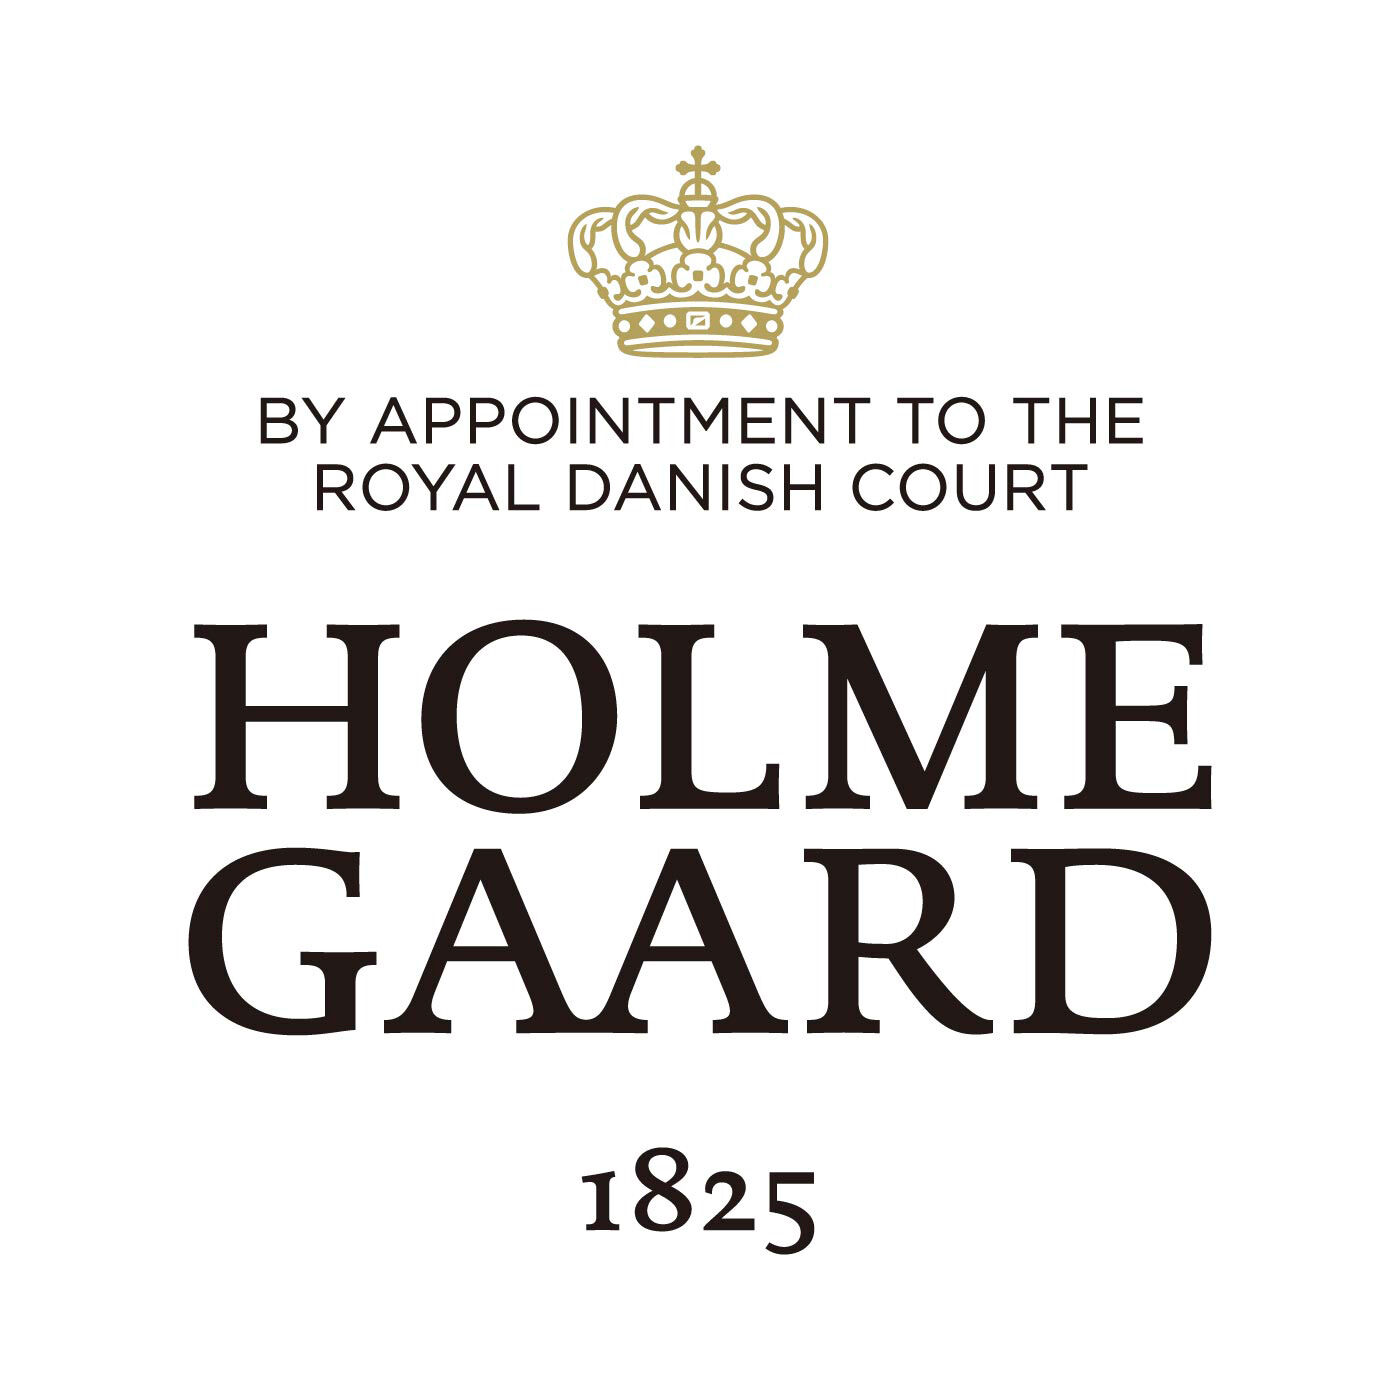 SeeMONO|ガラスのウェーブが美しい　一年中飾れるクリスマスツリー〈Ｍグリーン〉／ホルムガード|HOLMEGAARD（ホルムガード）は、1825年にデンマークに生まれた伝統あるガラスブランドです。1900年代、多くの芸術家が手掛け始めるホルムガードの商品は、そのクオリティの高さからデンマーク王室 御用達ブランドに選ばれました。熟練の職人たちによる吹きガラス製法で生み出されるユニークなデ ザインのガラス製品は世界中の美術館に所蔵されています。